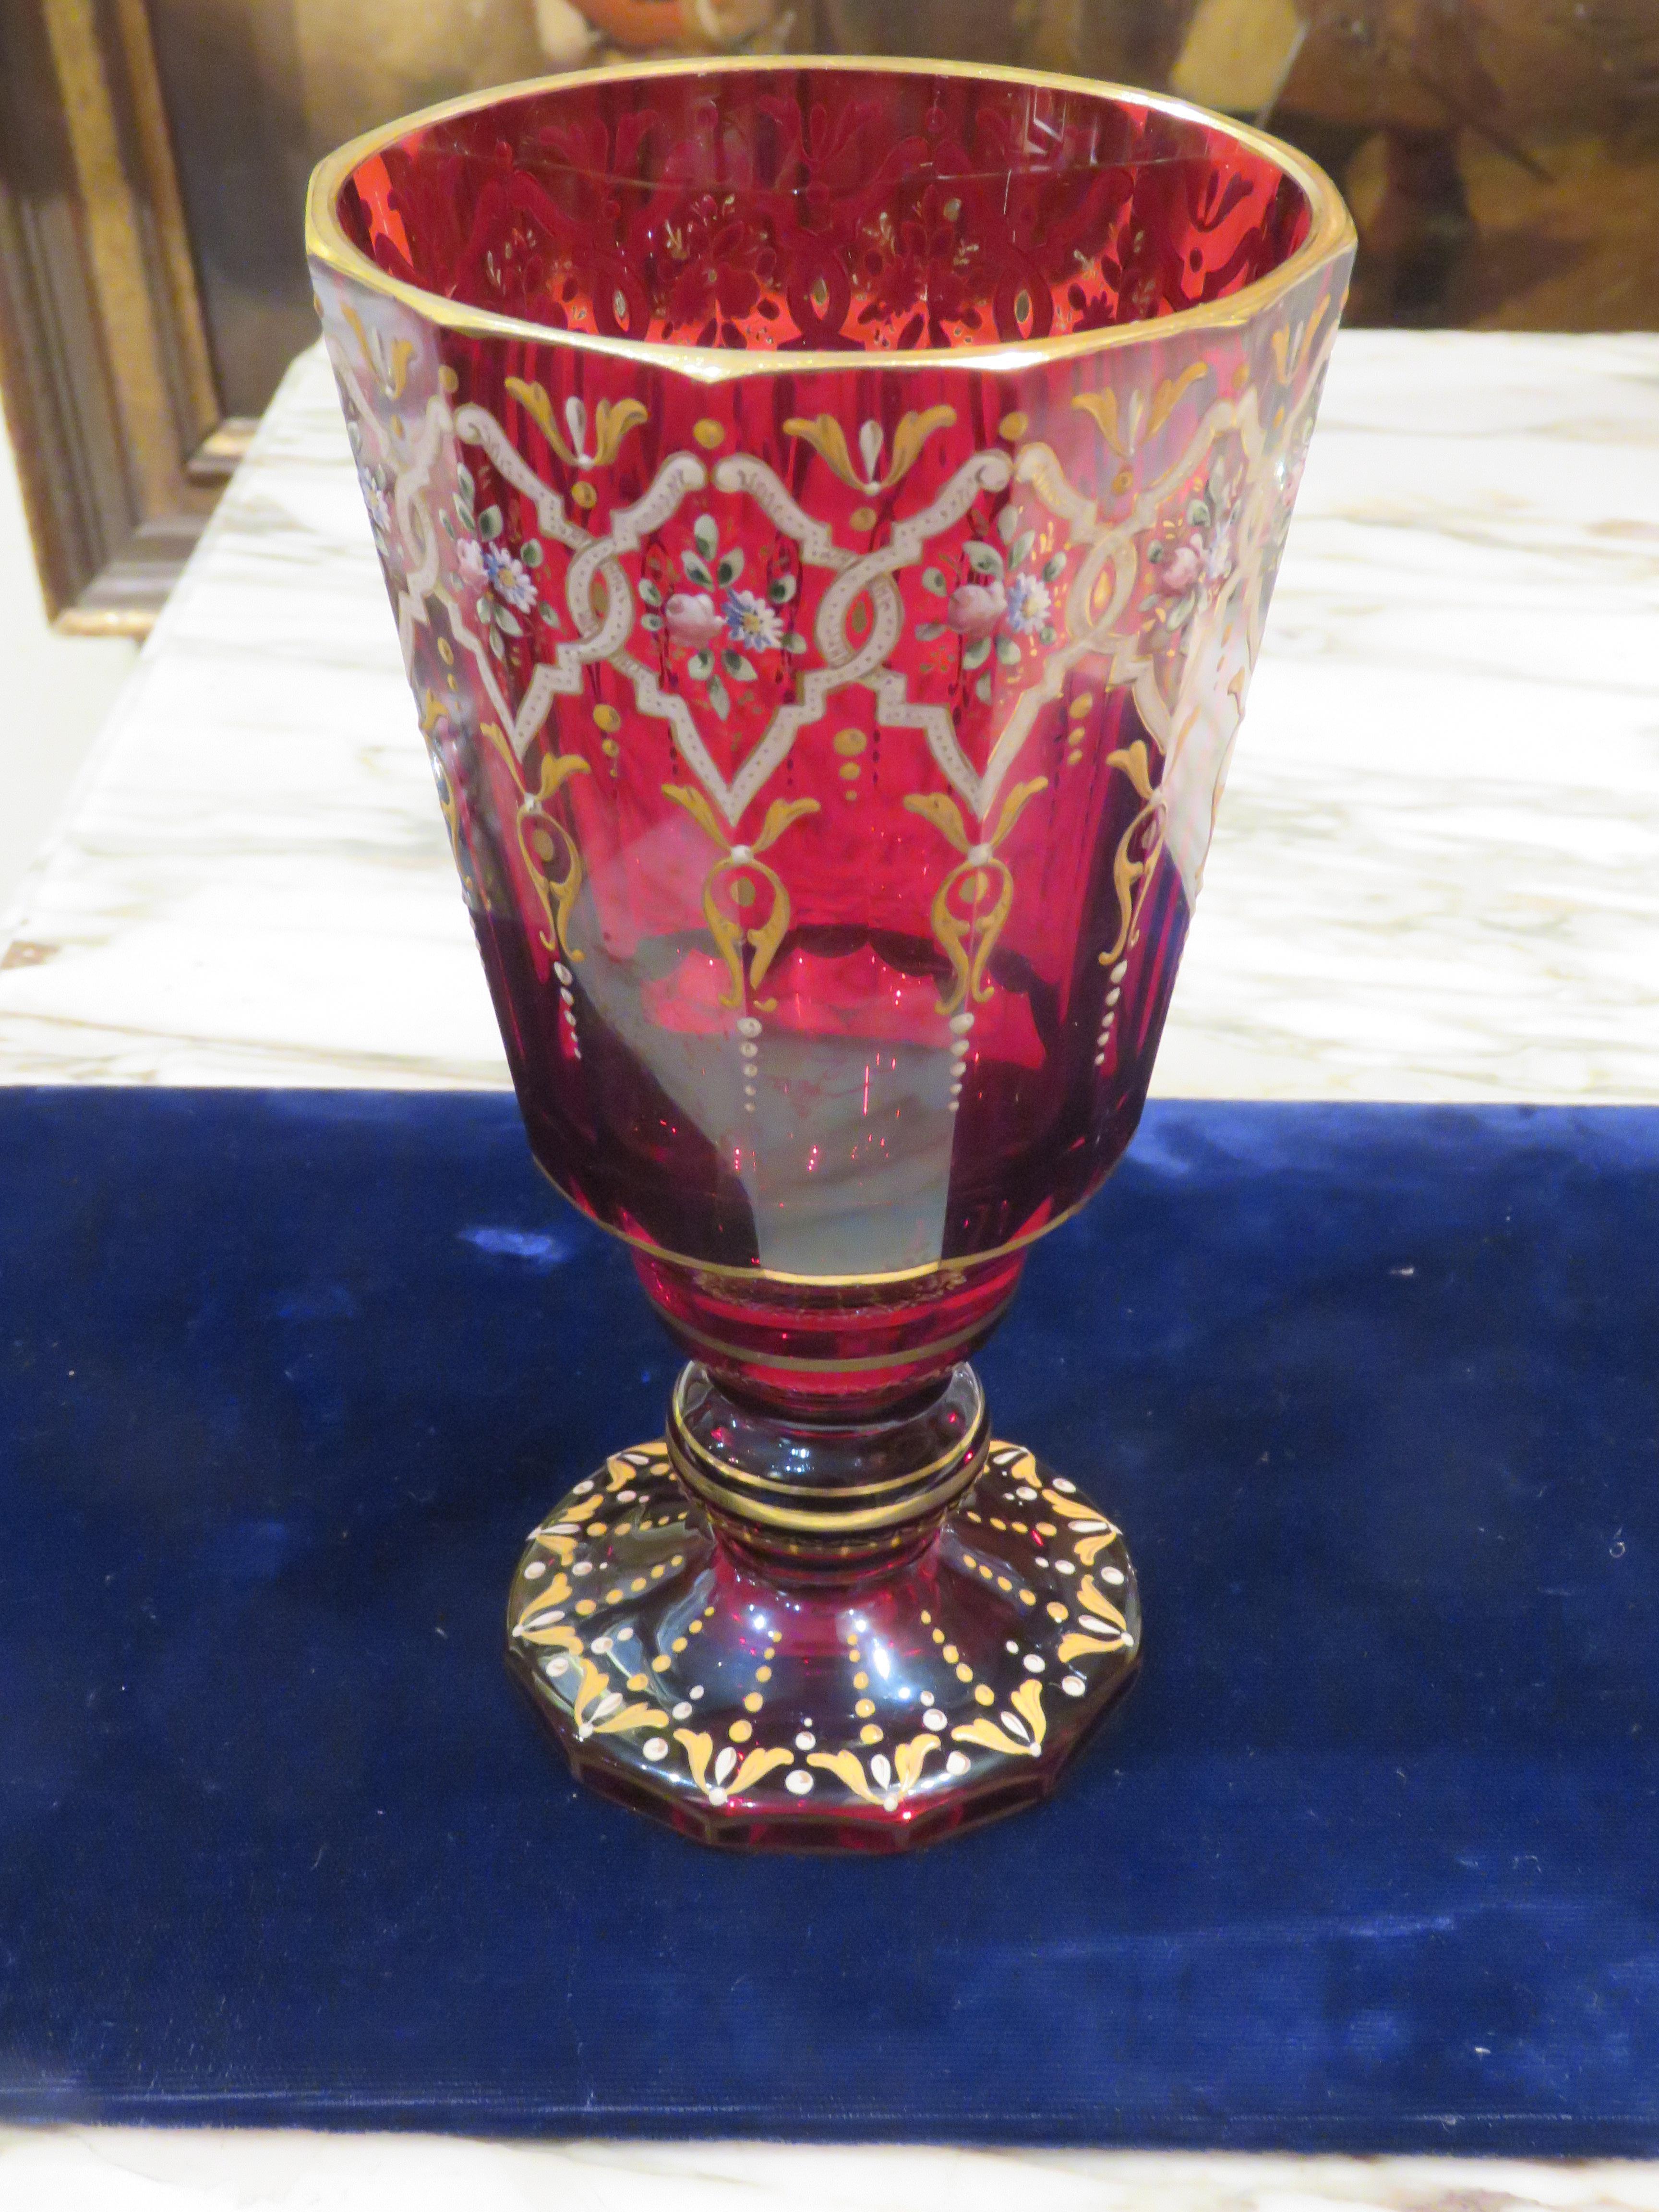 Der folgende Artikel, den wir anbieten, ist ein prächtiger, seltener Moser-Pokal aus dem 19. Moser Cranberry Red Glass Goblet hat ein geometrisches Design in weißer und goldener Farbe. Die Blumen sind von ineinander verschlungenen Linien aus bunten